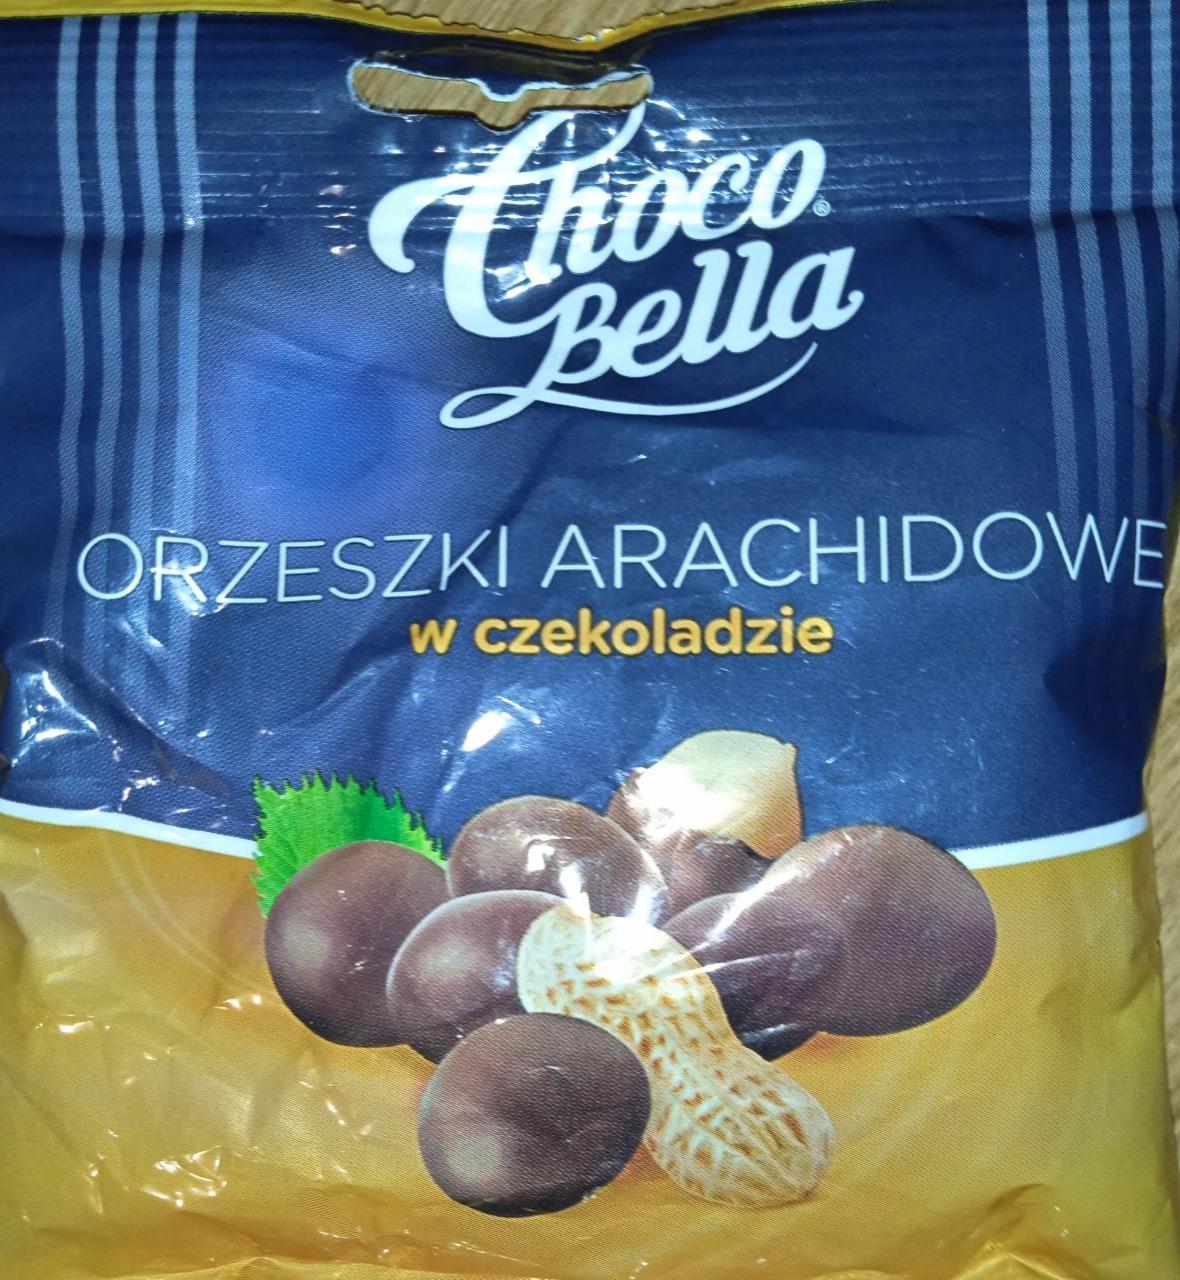 Zdjęcia - Orzeszki arachidowe w czekoladzie Choco Bella